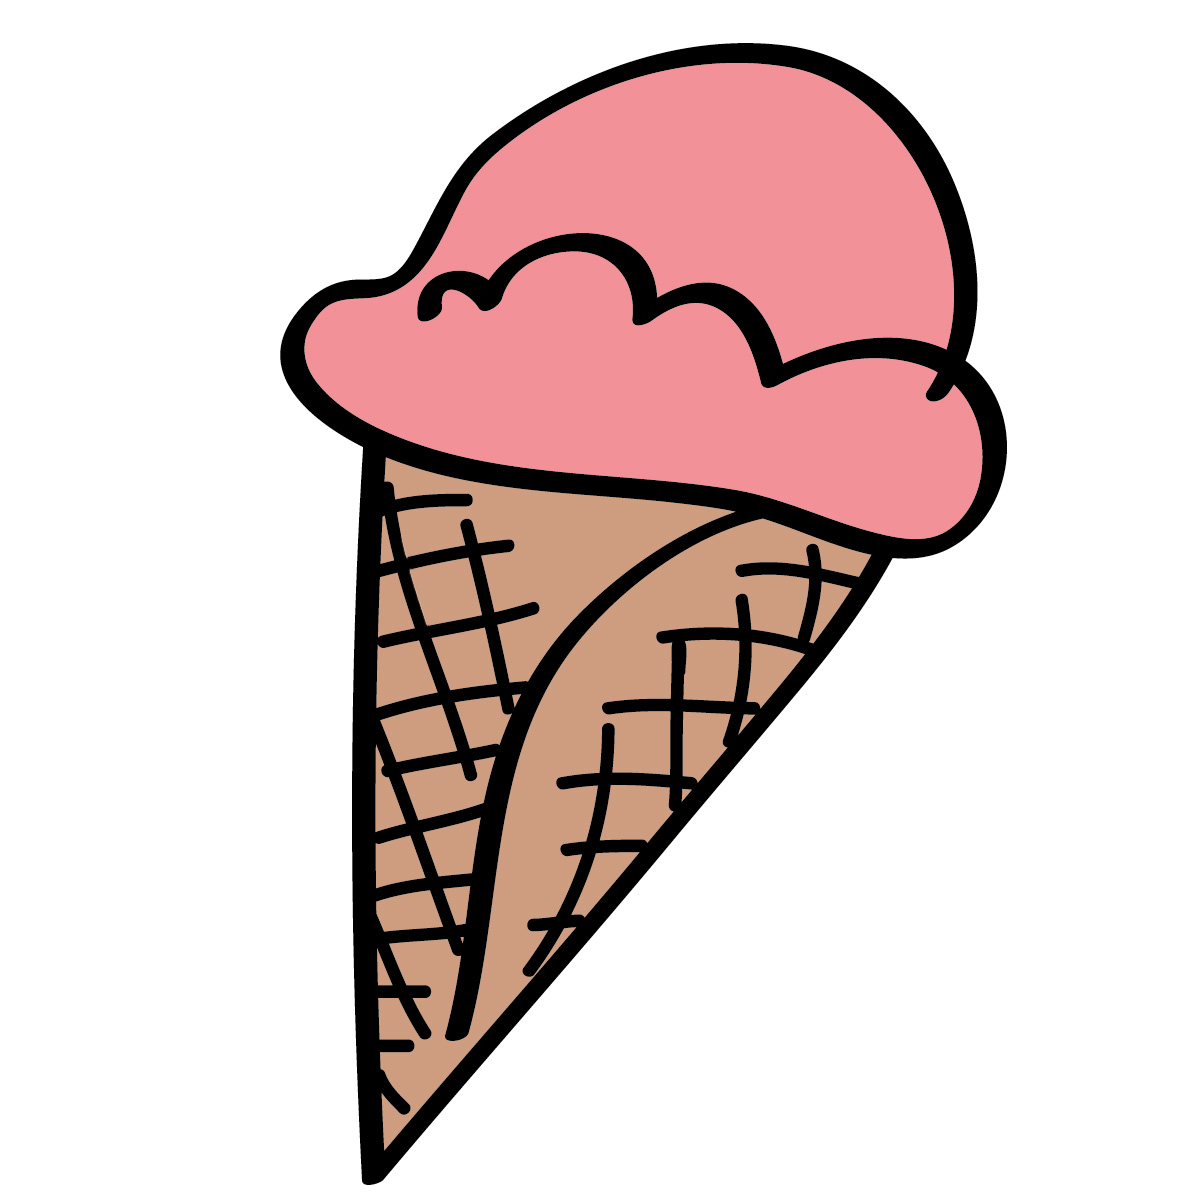 Cool ice cream cone clipart i